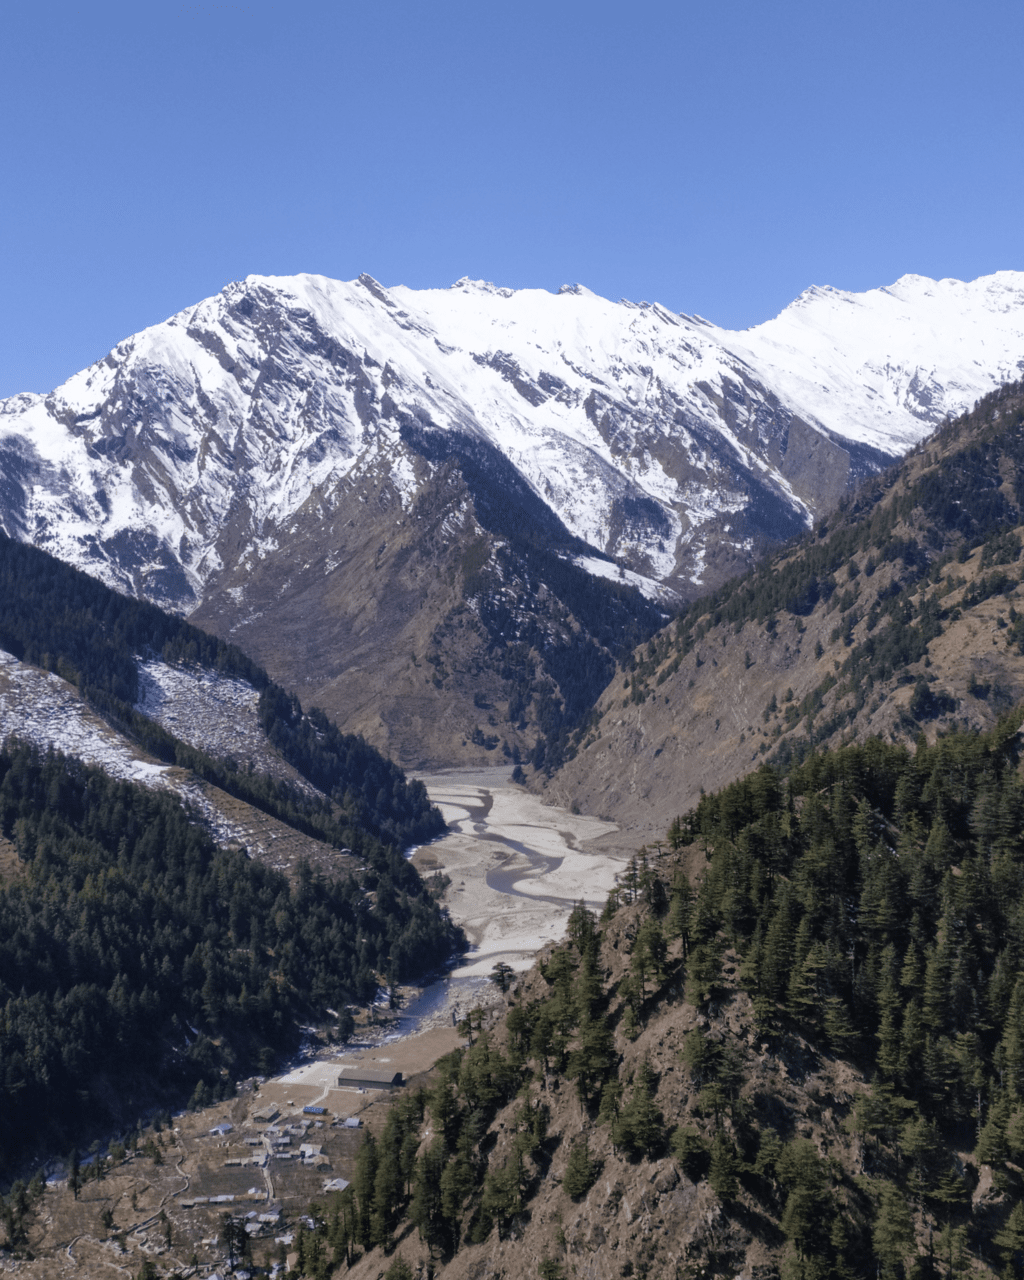 Is Himachal better or Uttarakhand